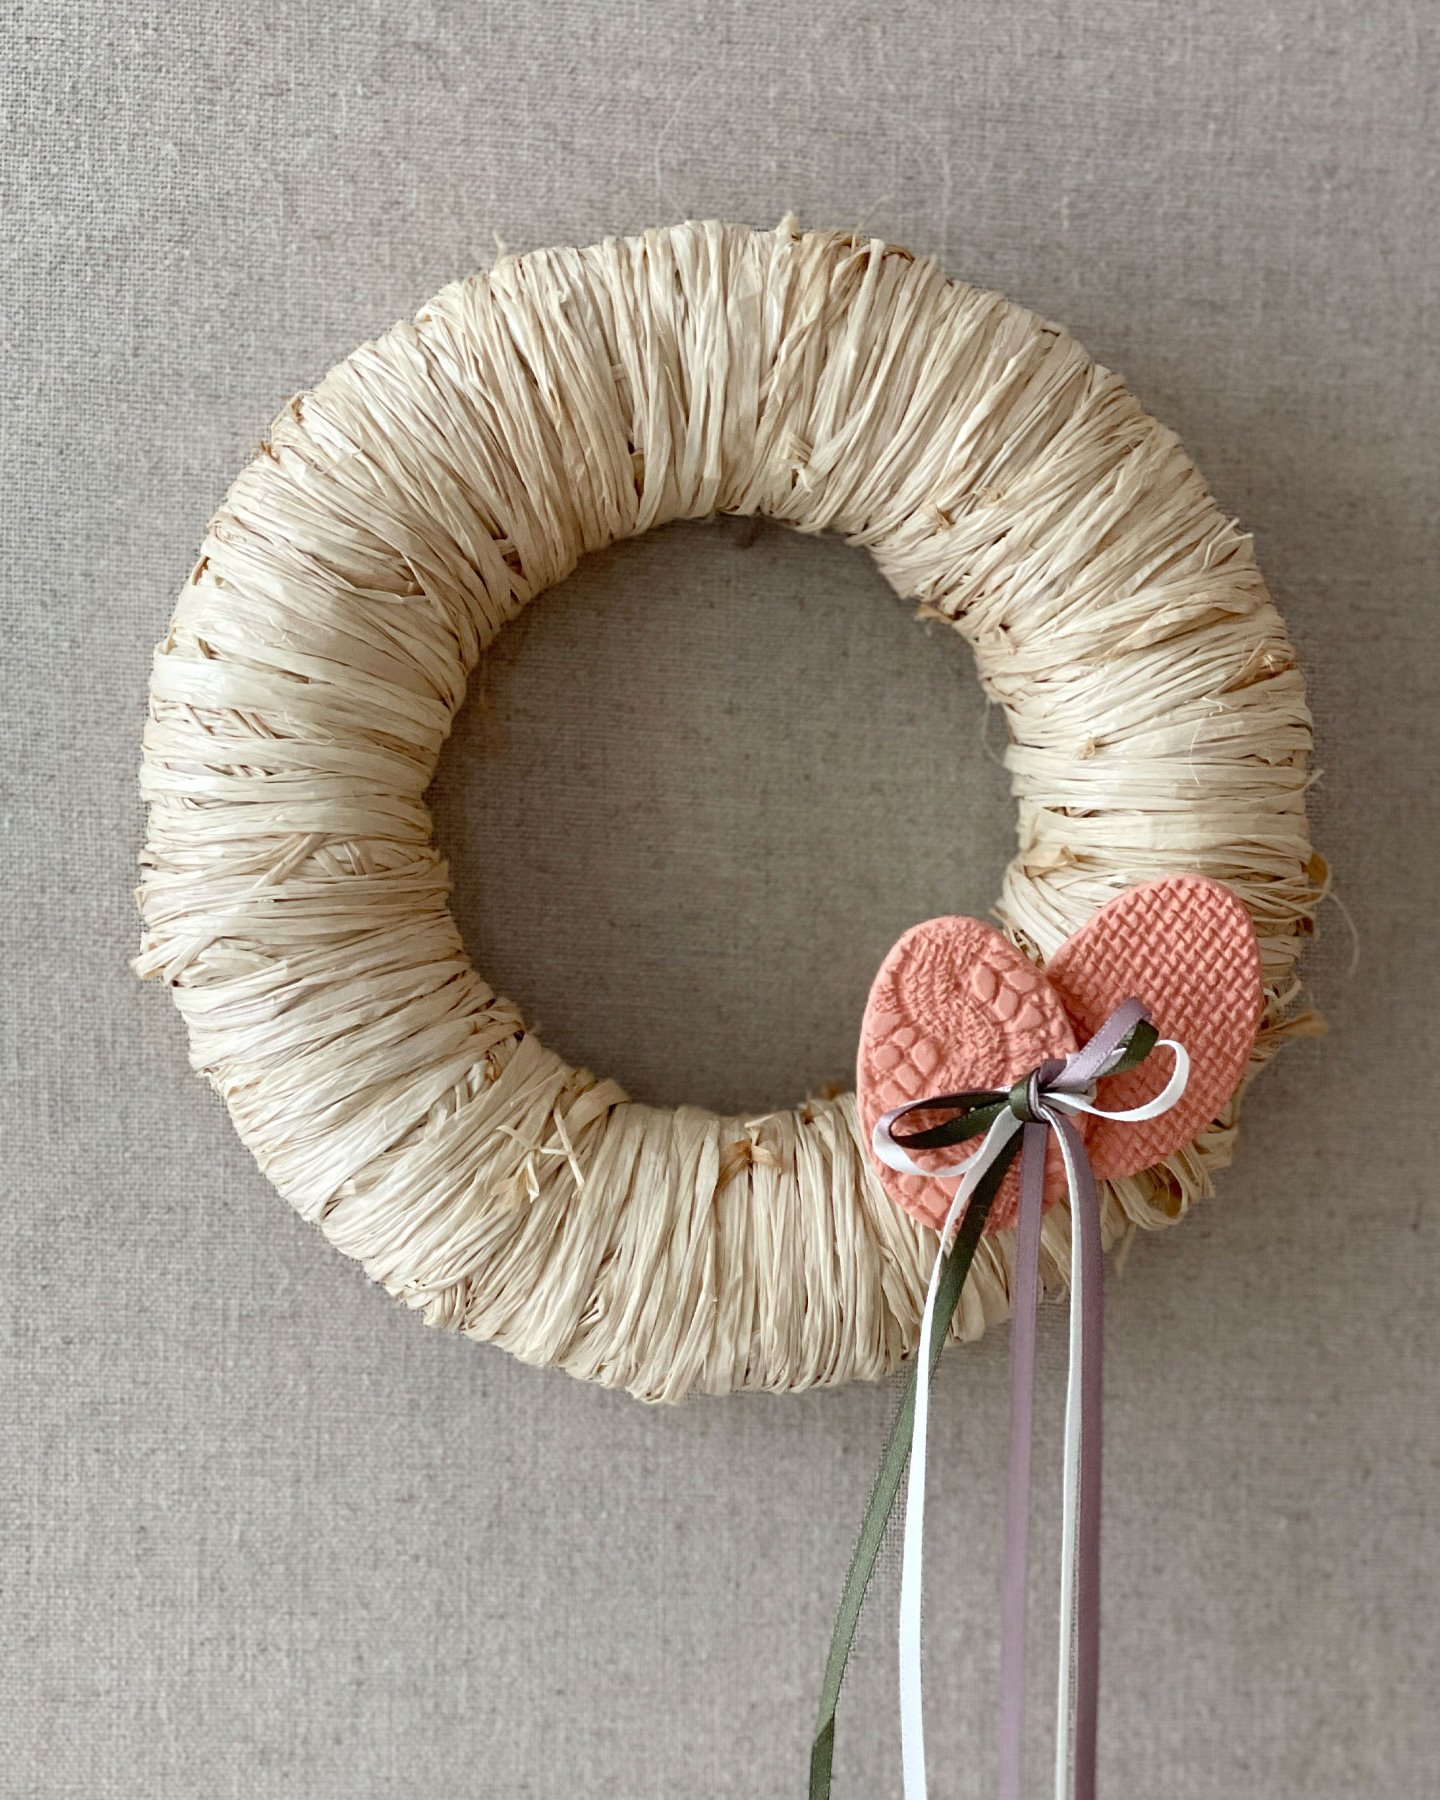 DIY: Raffia-wrapped Easter wreath DIY4310-Image.jpg